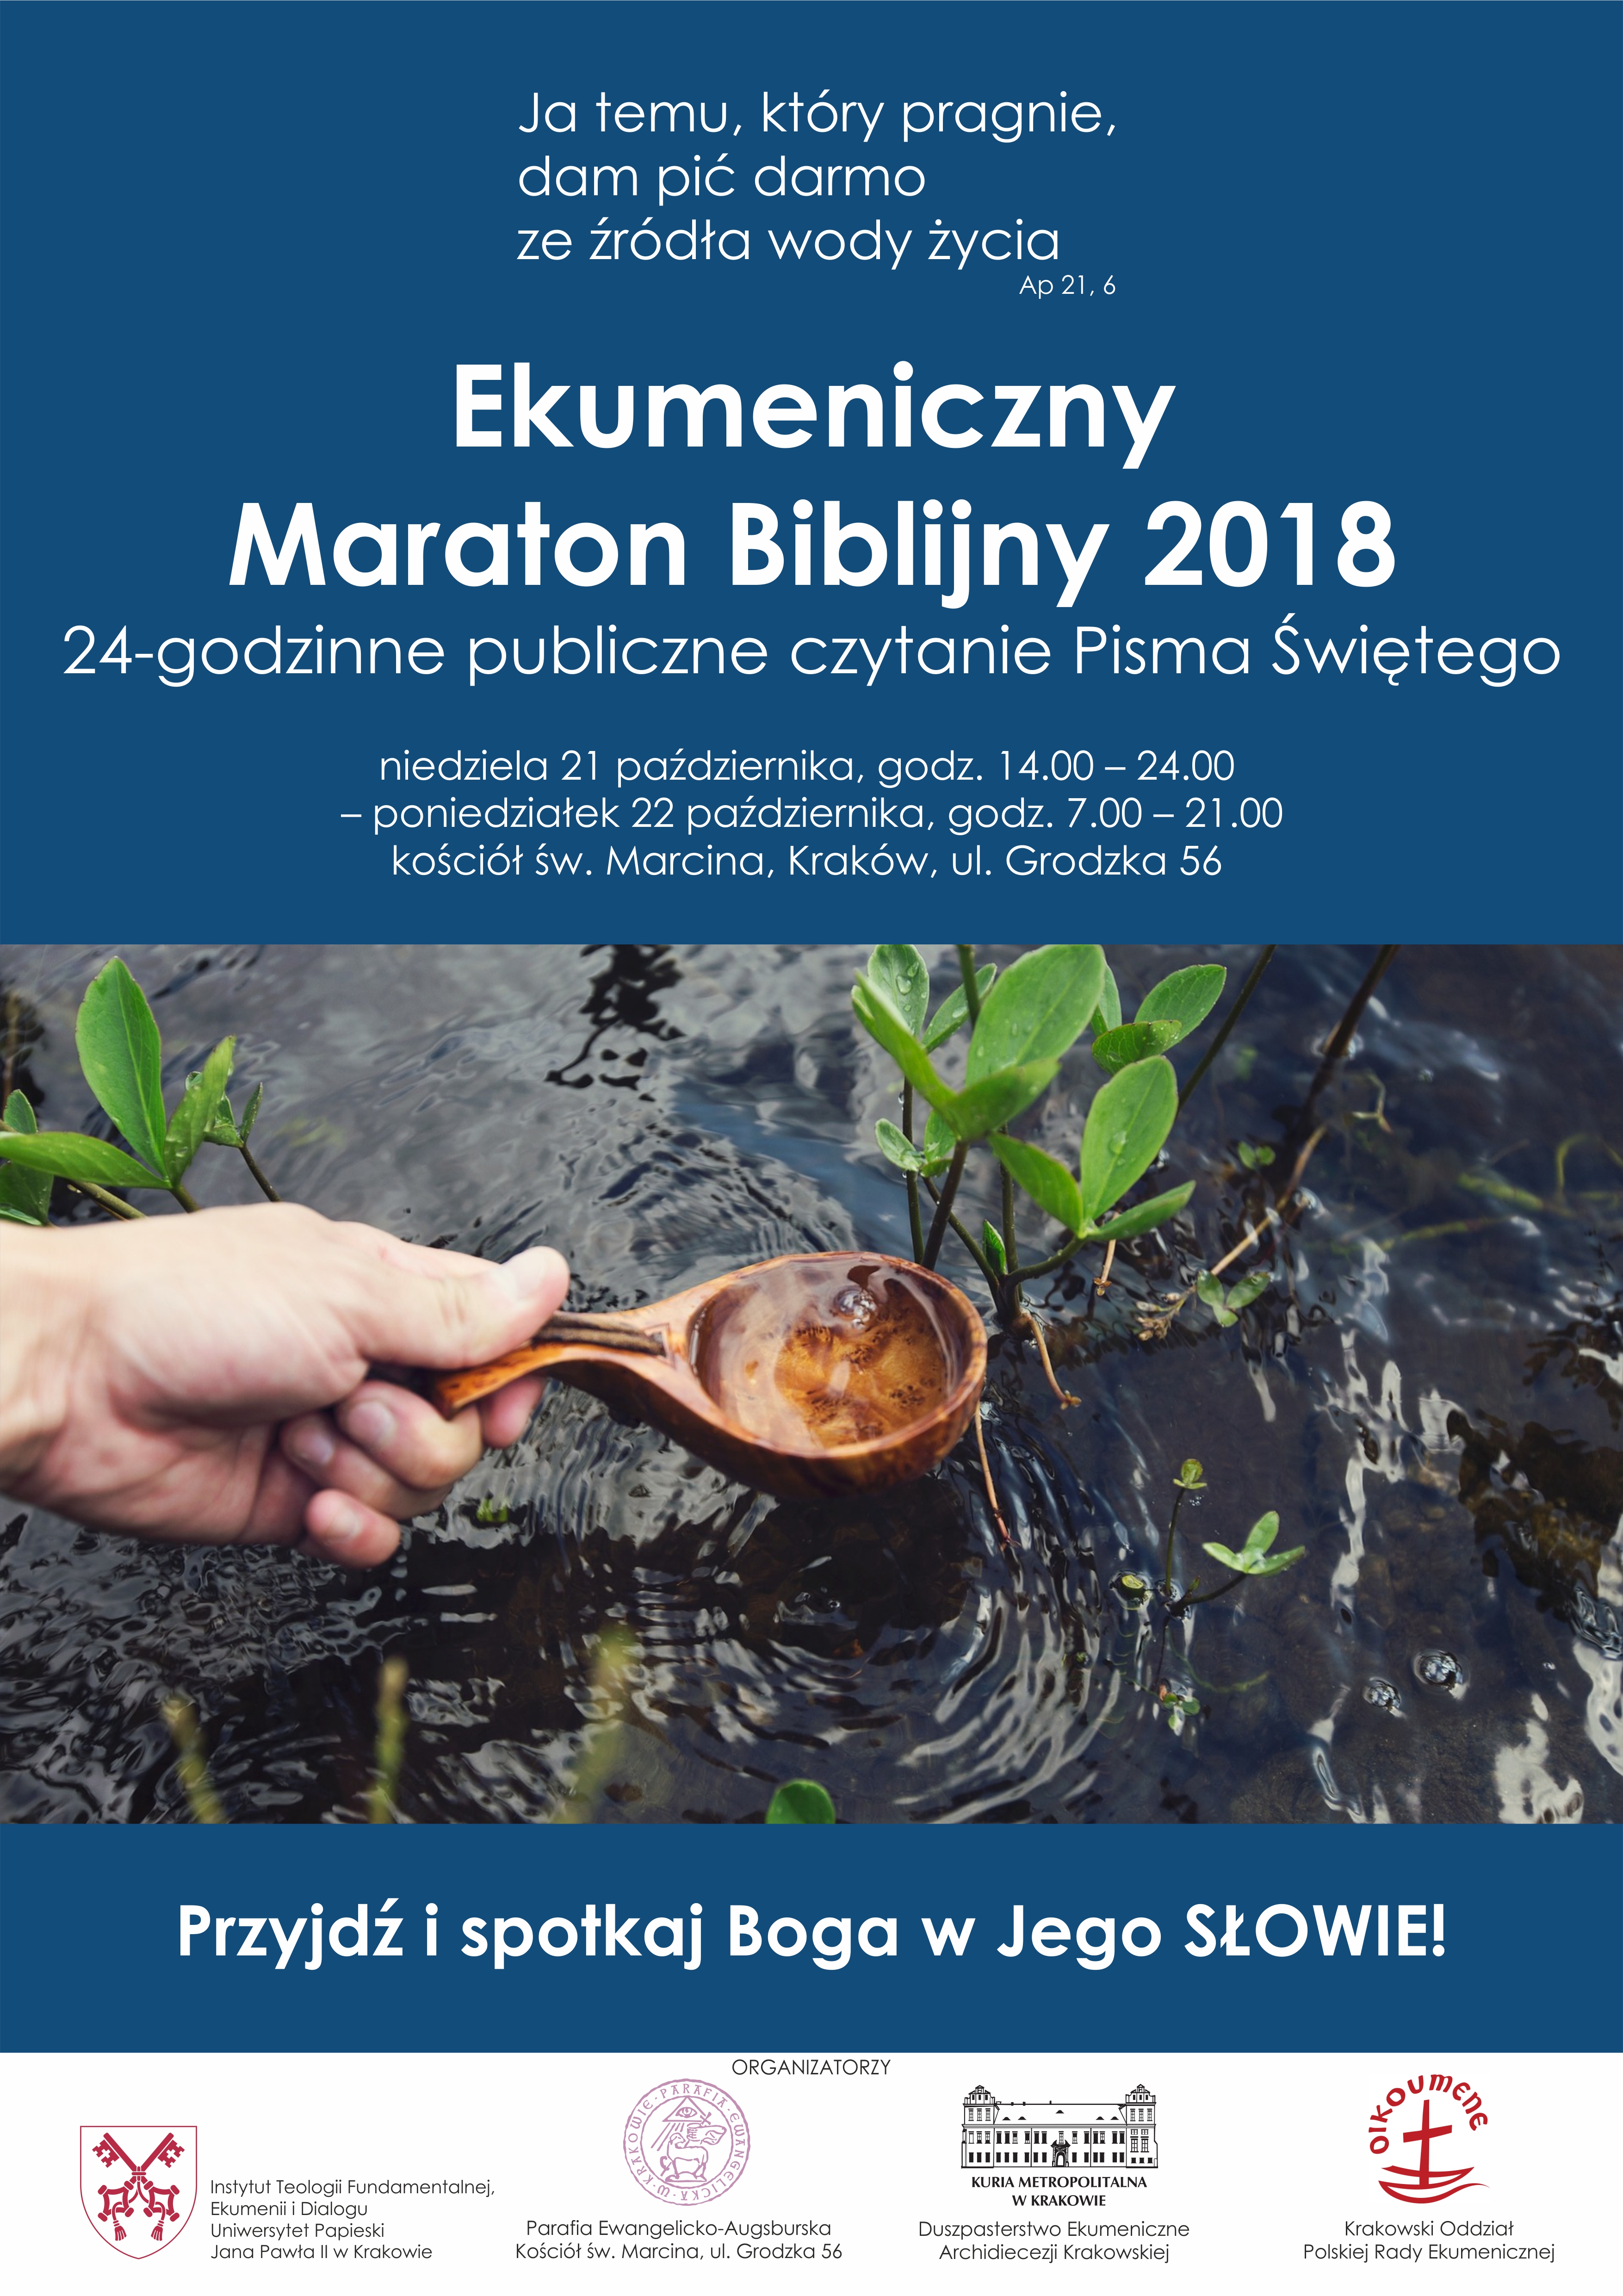 Ekumeniczny Maraton Biblijny w Krakowie